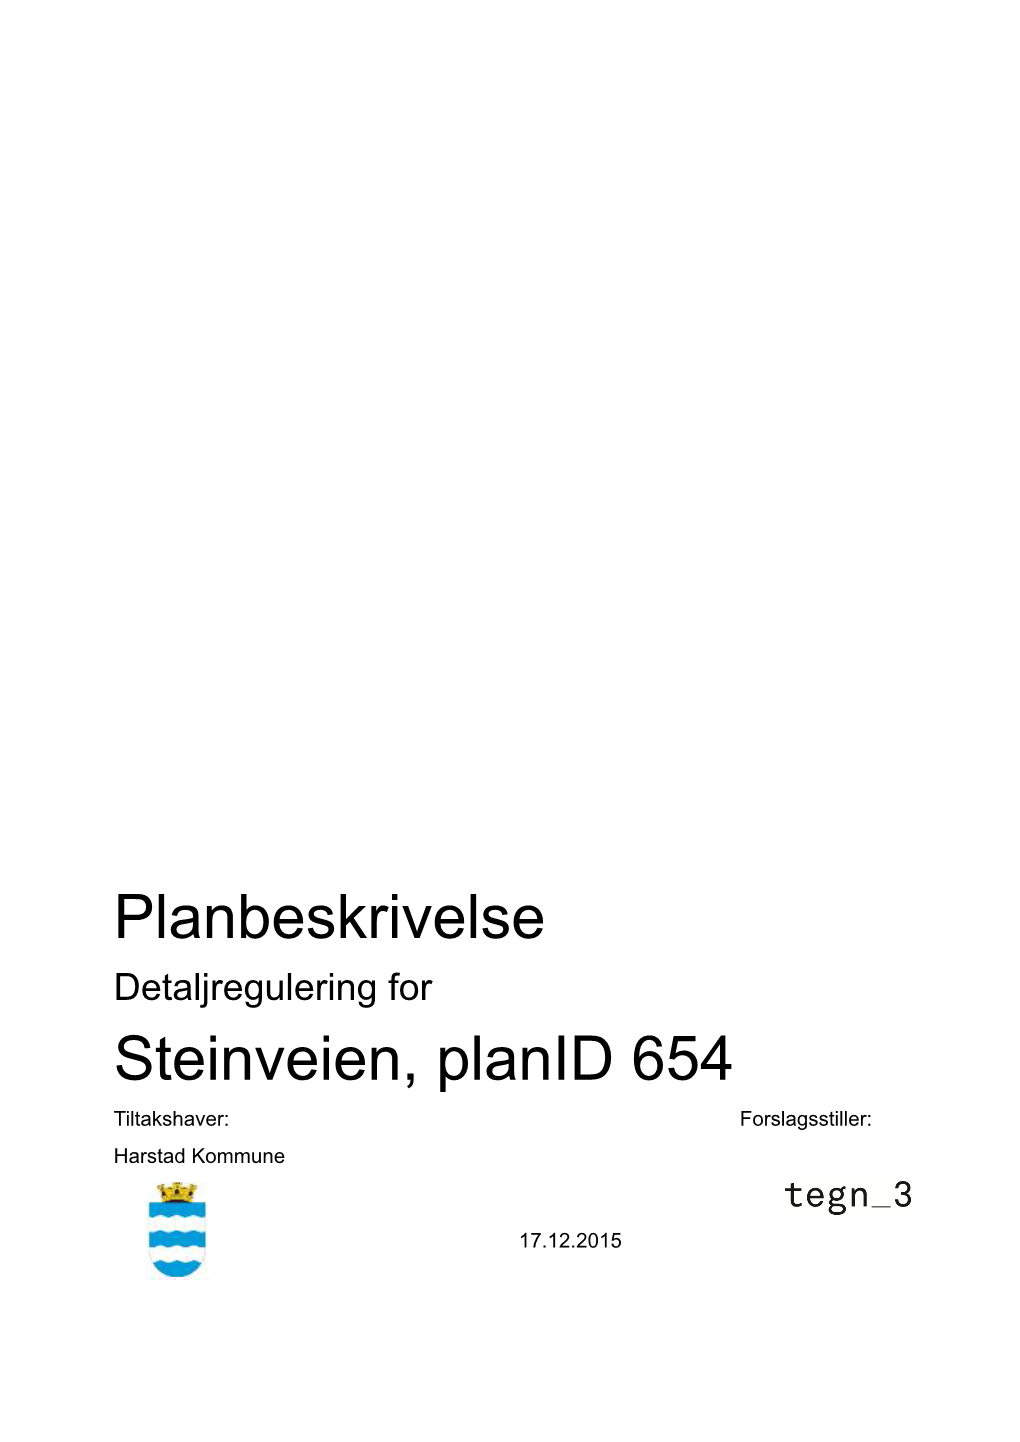 Planbeskrivelse Steinveien, Planid